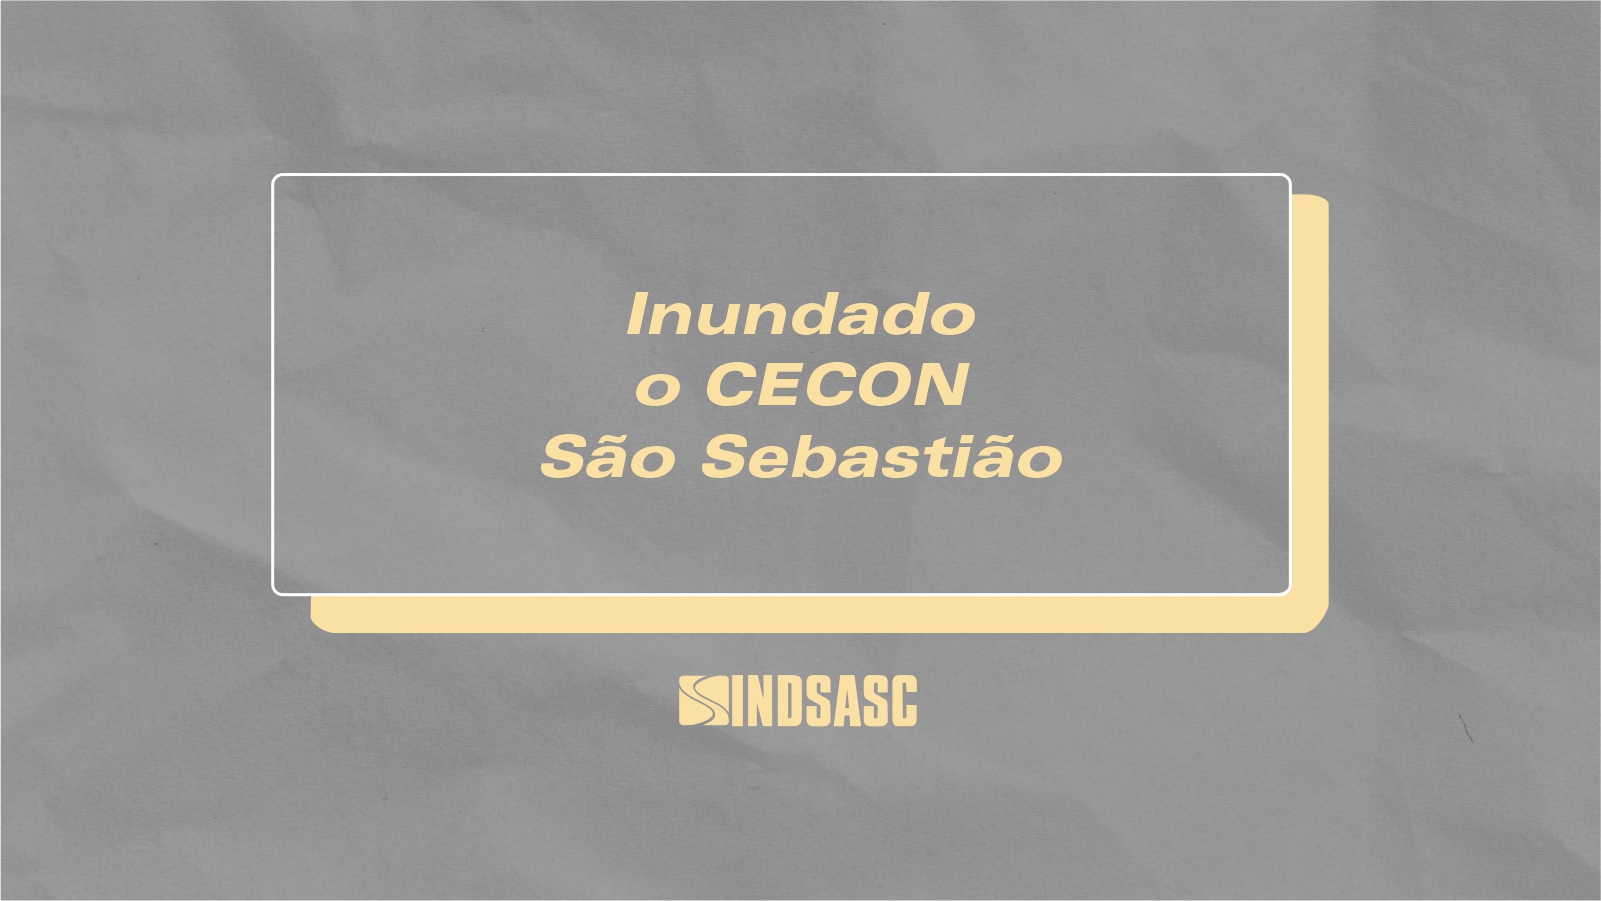 CECON São Sebastião